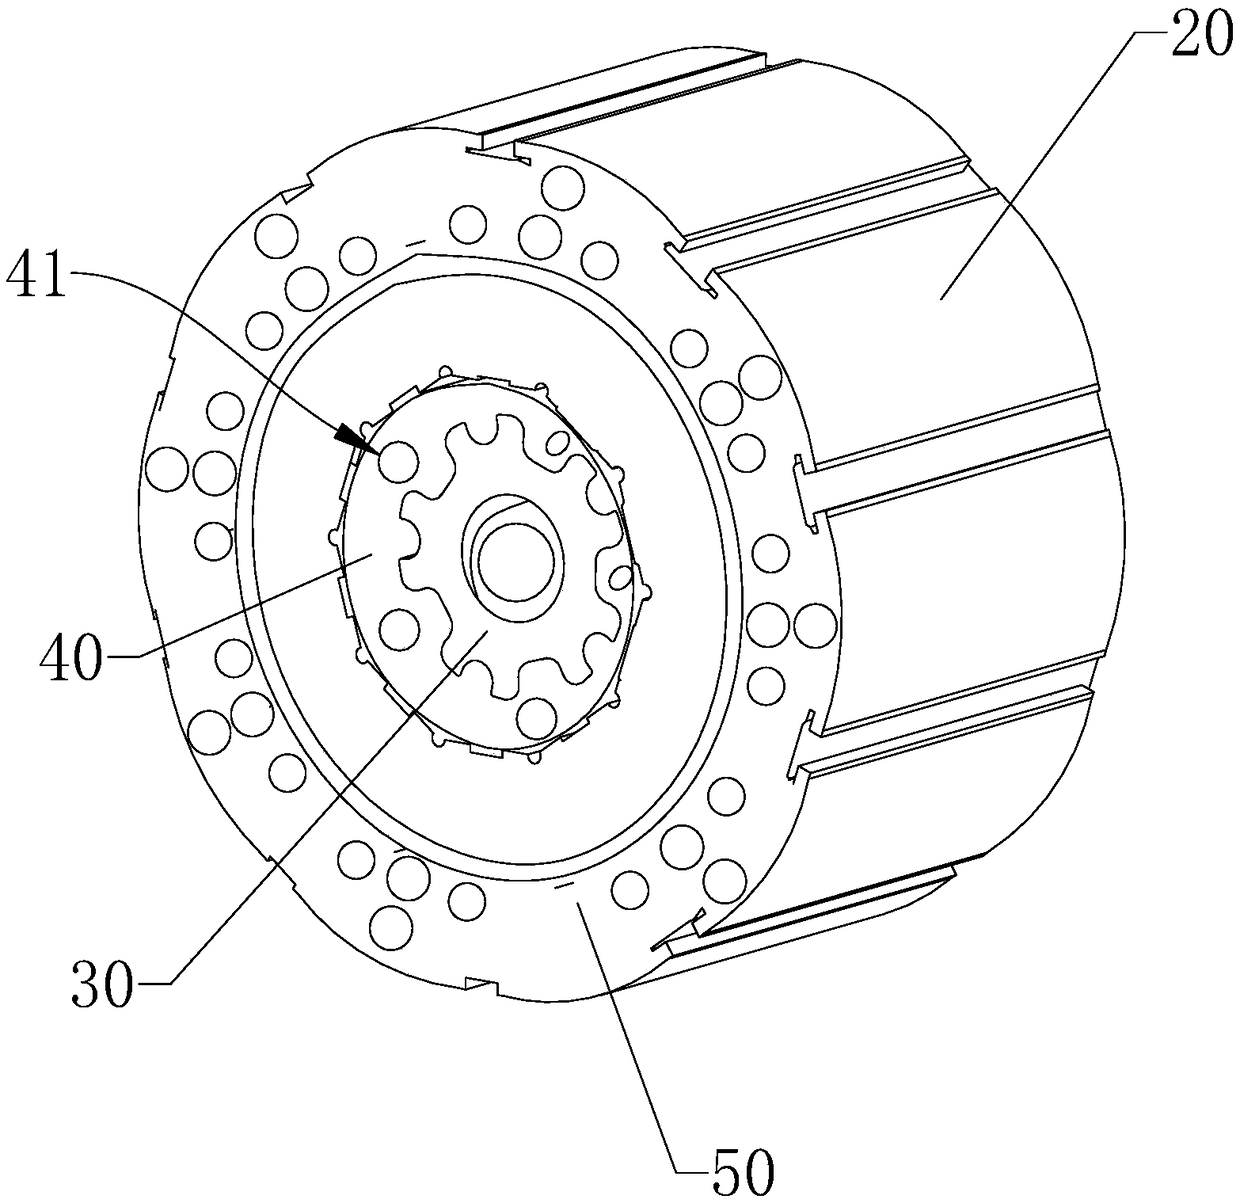 A sub-block vibration-damping rotor